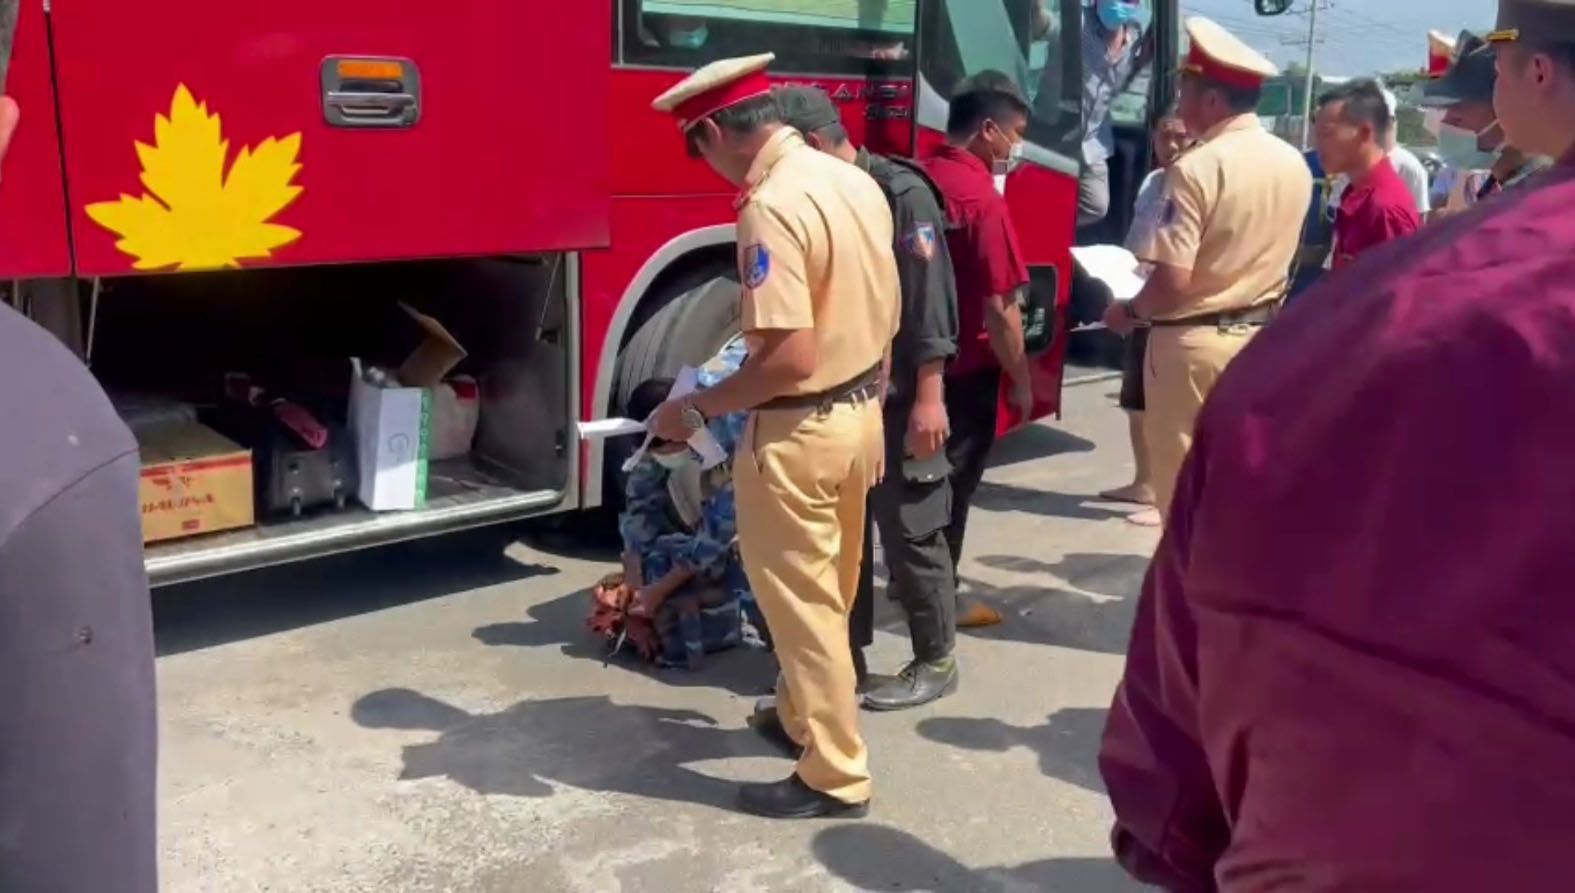 Đồng Nai: Đội tuần tra Phòng Cảnh sát Giao thông rượt đuổi, chặn bắt một xe khách chở hàng hóa nghi vấn trên Quốc lộ 1A